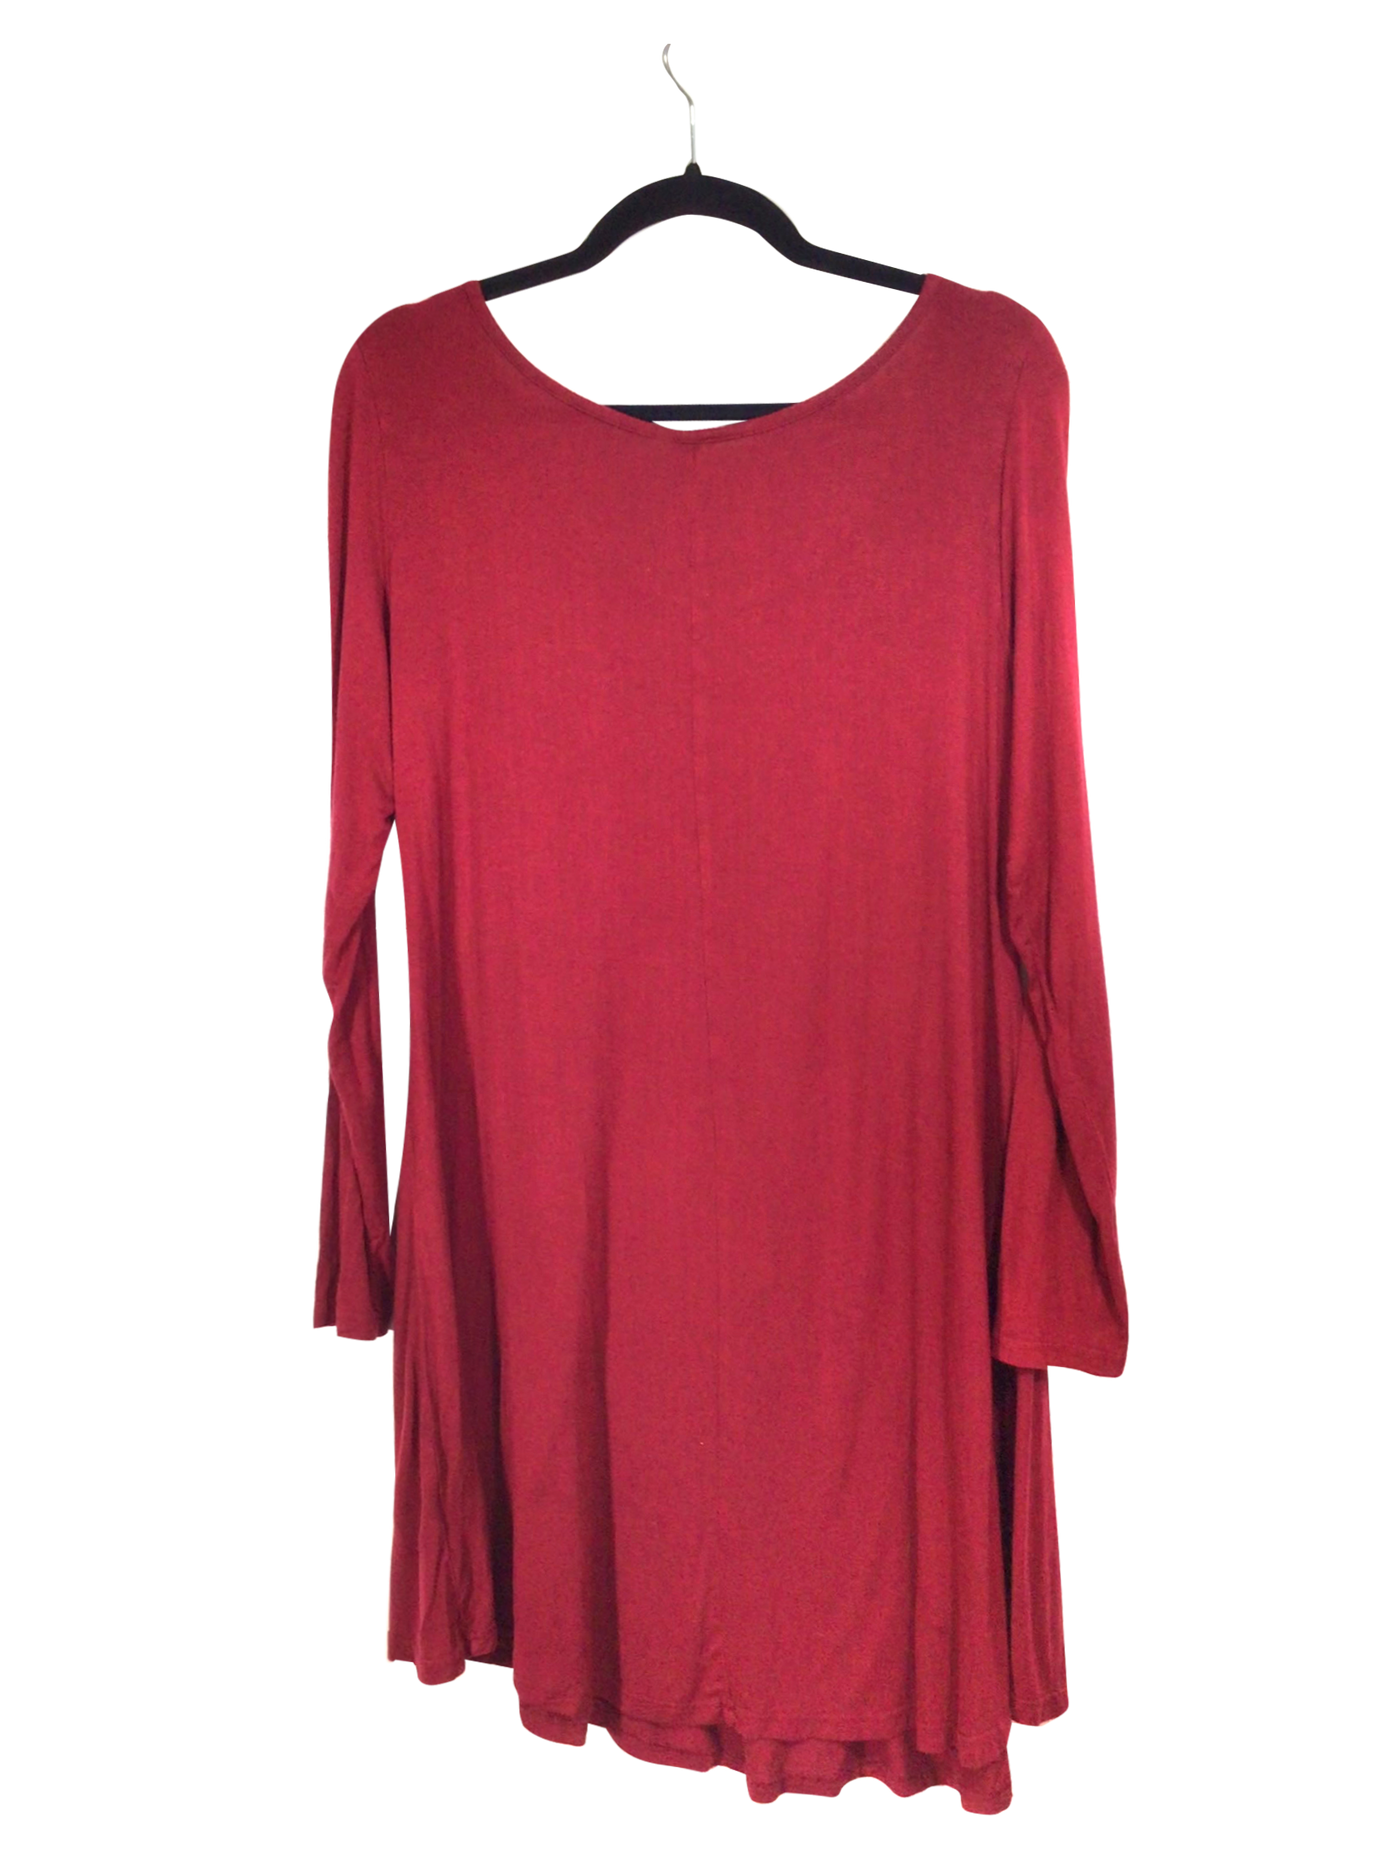 DEAR CASE Regular fit Shift Dress in Red - Size L | 15 $ KOOP